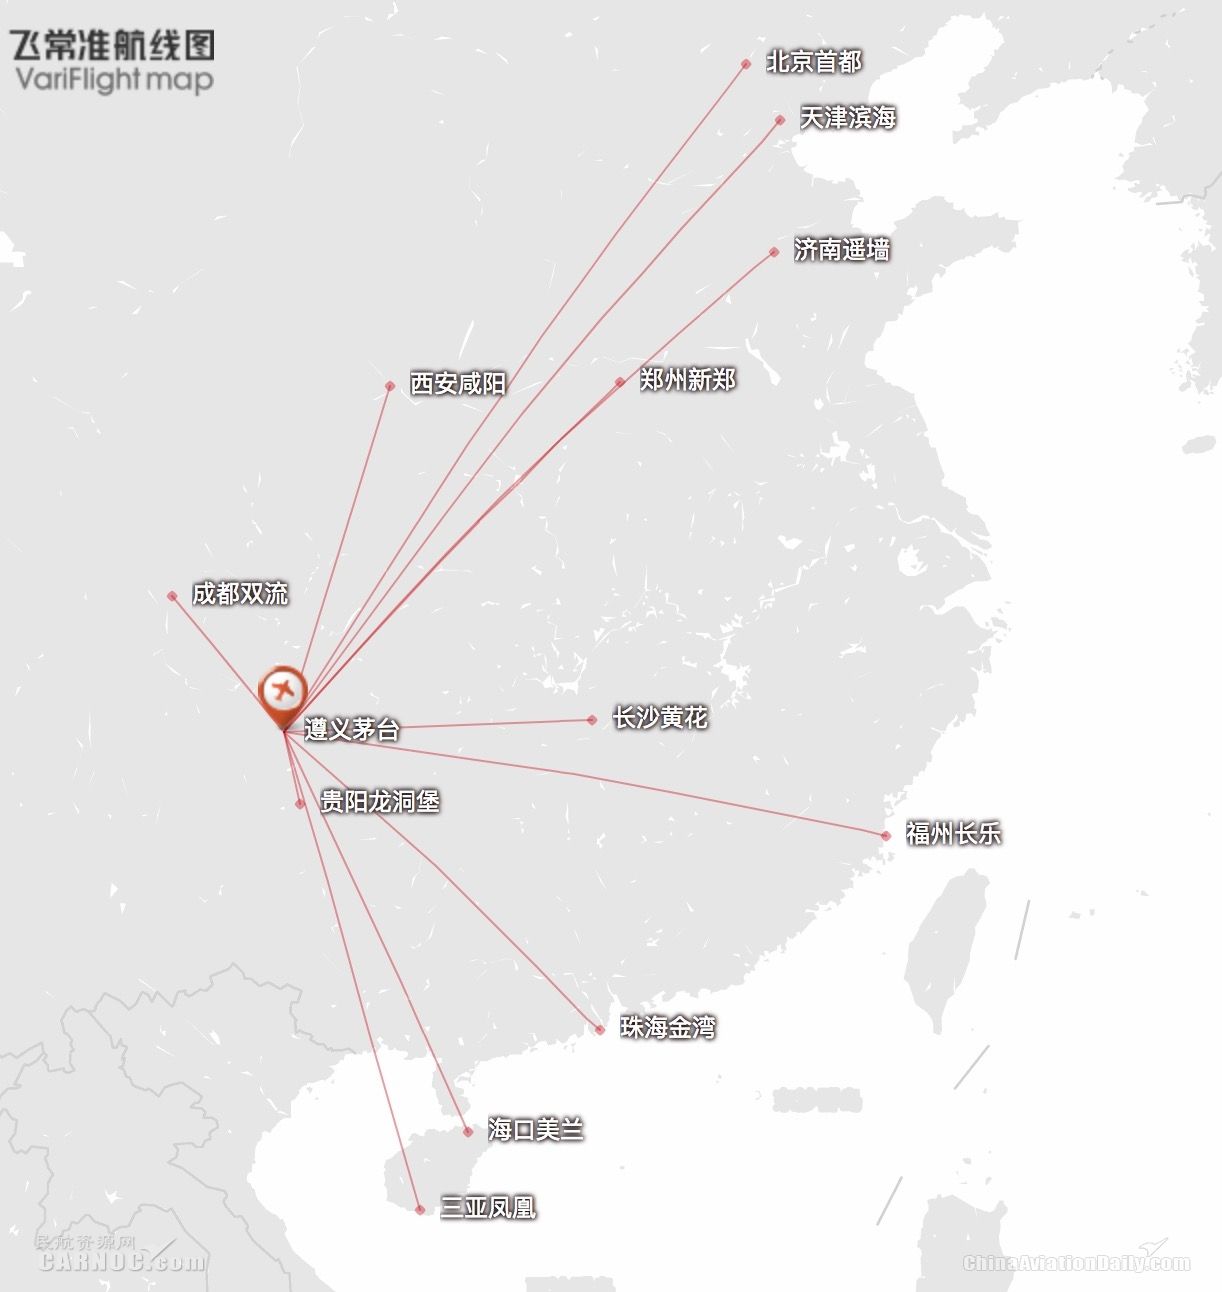 来源:飞常准航线图2017年10月31日贵州遵义茅台机场正式通航